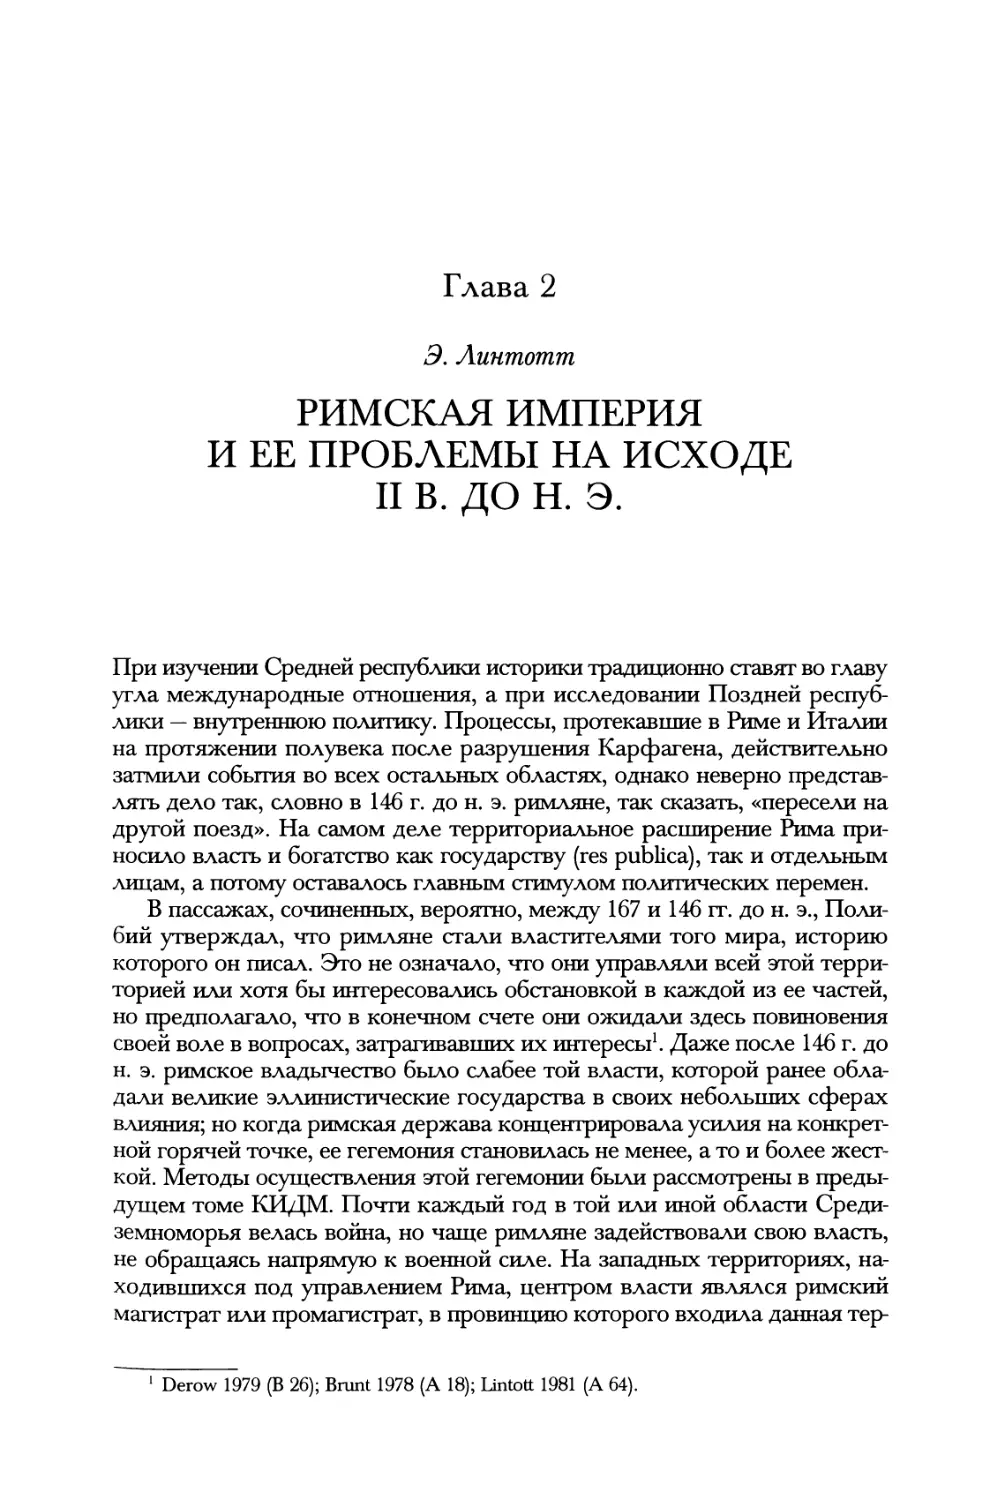 Глава 2. Римская империя и ее проблемы на исходе II в. до н. э. Э. Линтотт